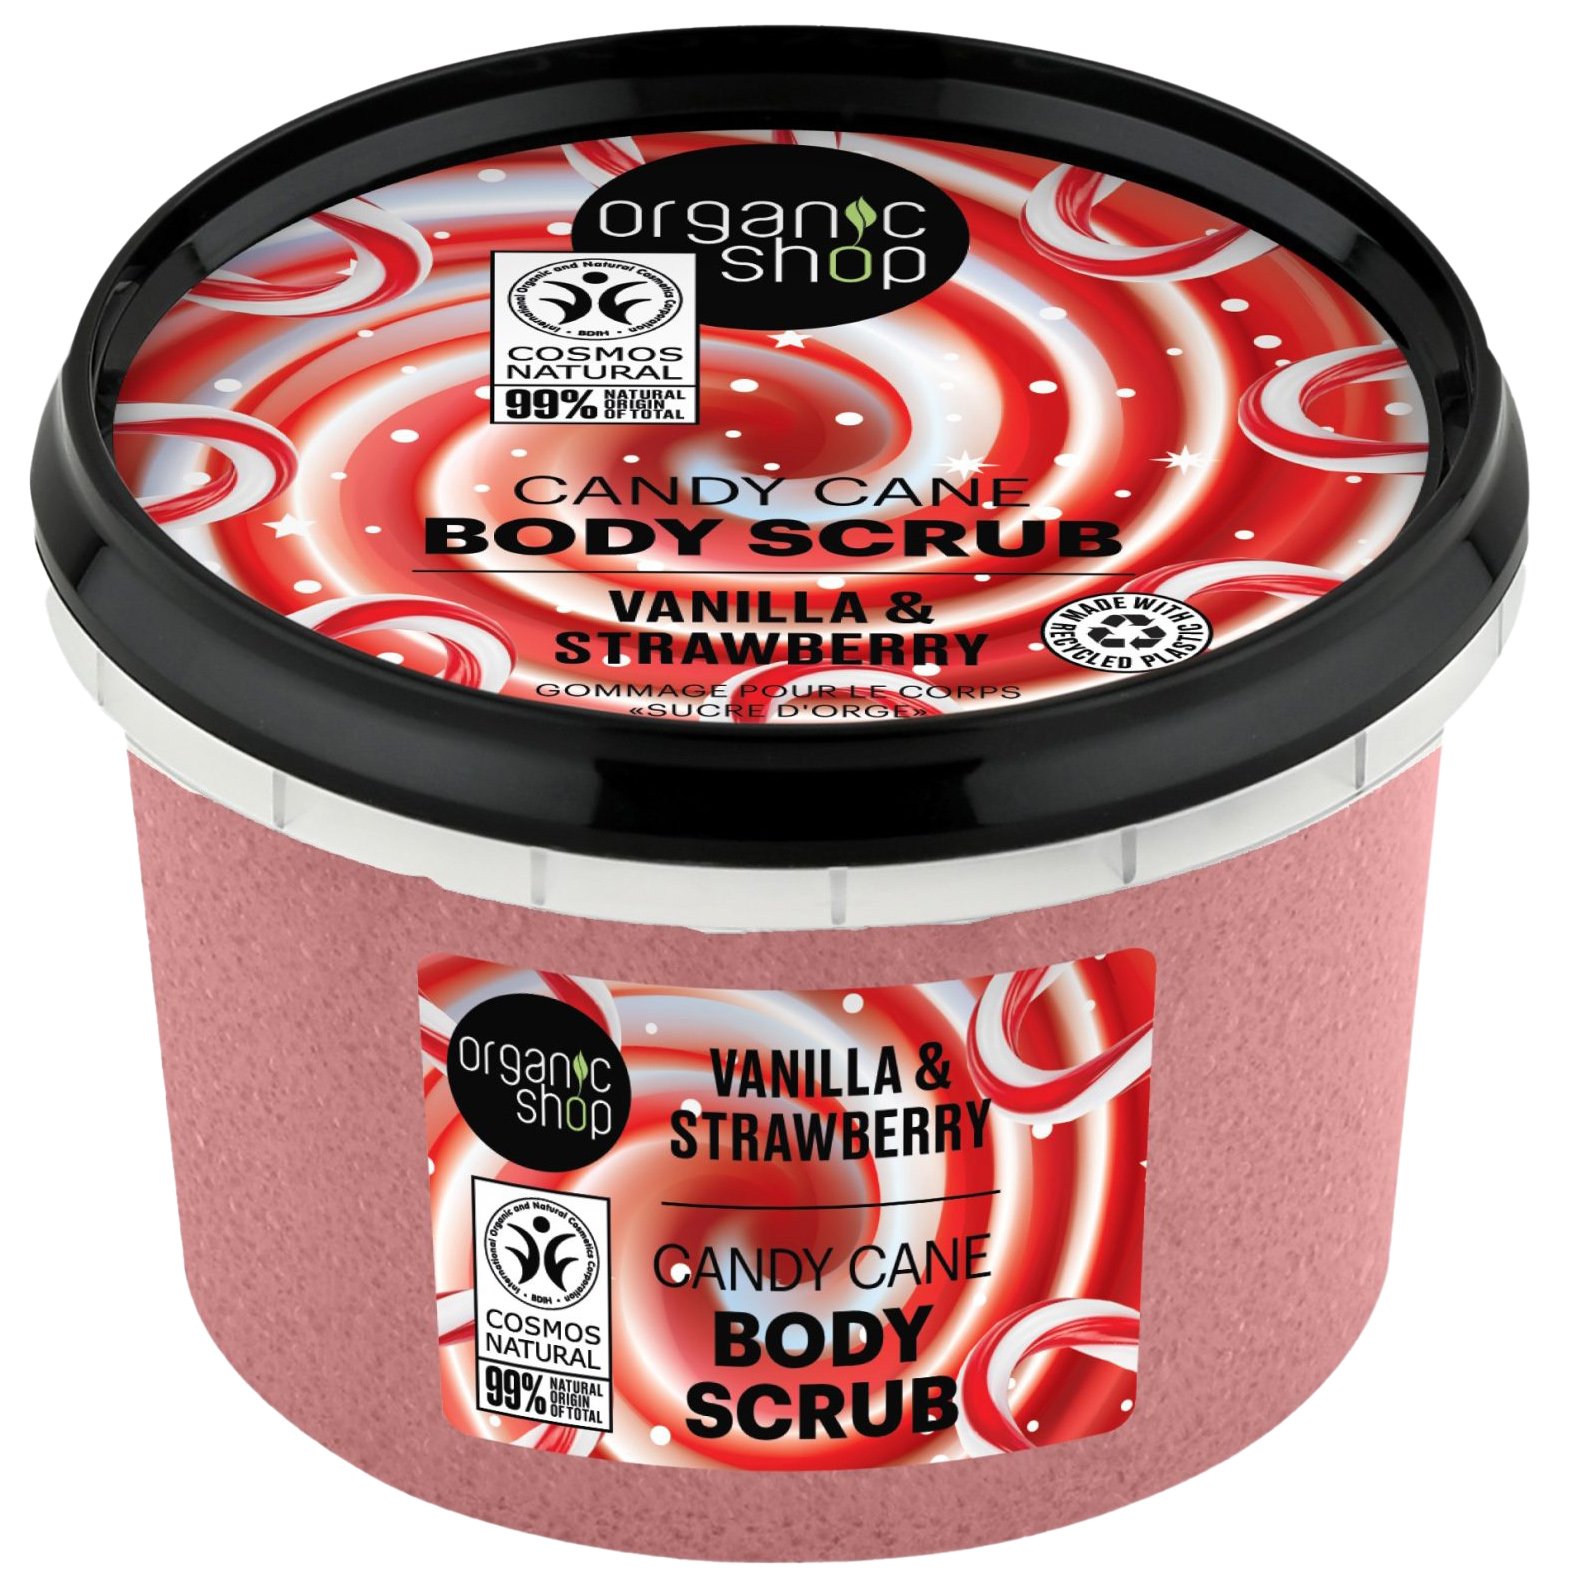 Organic Shop Candy Cane Body Scrub with Vanilla & Strawberry Απολεπιστικό Σώματος με Βανίλια & Φράουλα για Άμεση Ενυδάτωση 250ml